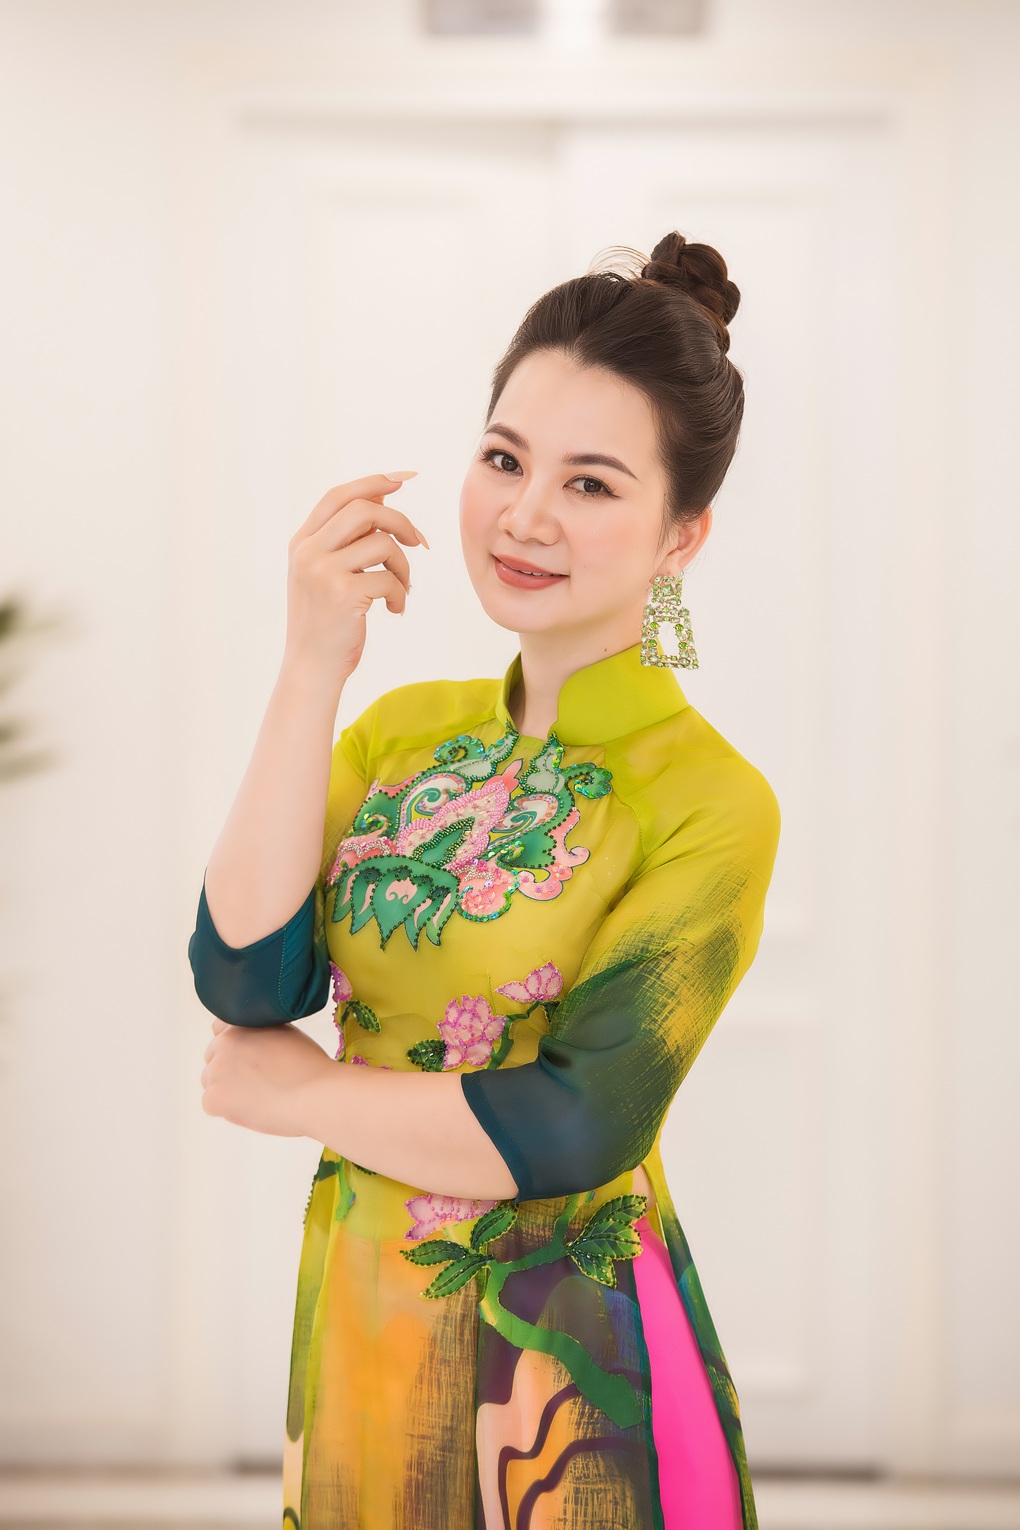 Đại sứ Hoa hậu áo dài Việt Nam Phạm Thu Thủy: Vương miện thuộc về người xứng đáng - 5